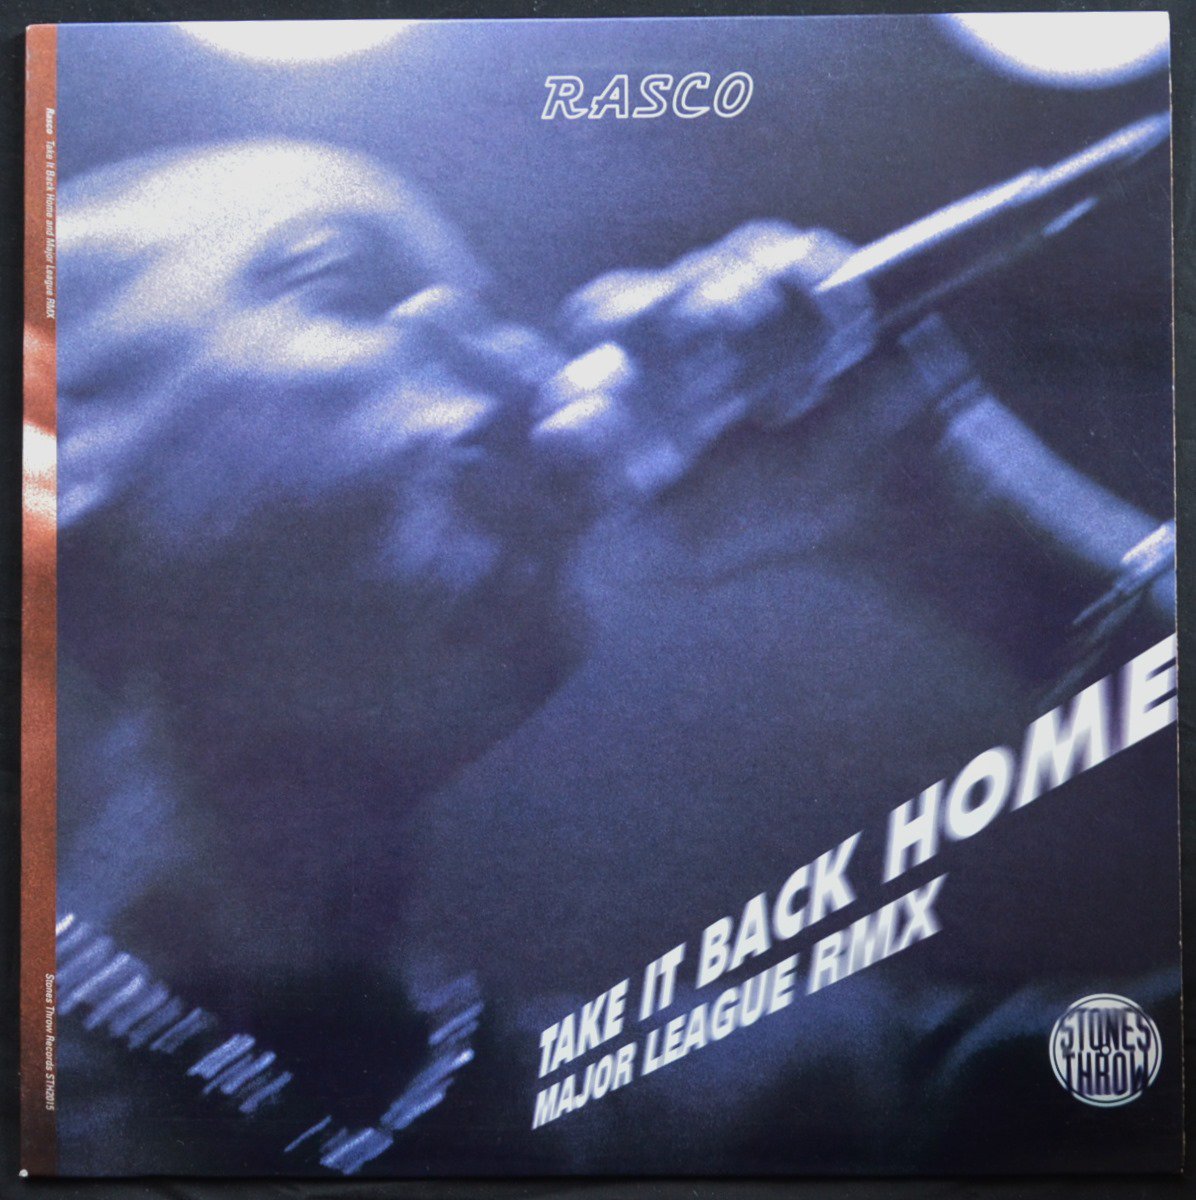 RASCO / TAKE IT BACK HOME / MAJOR LEAGUE (REMIX) (12